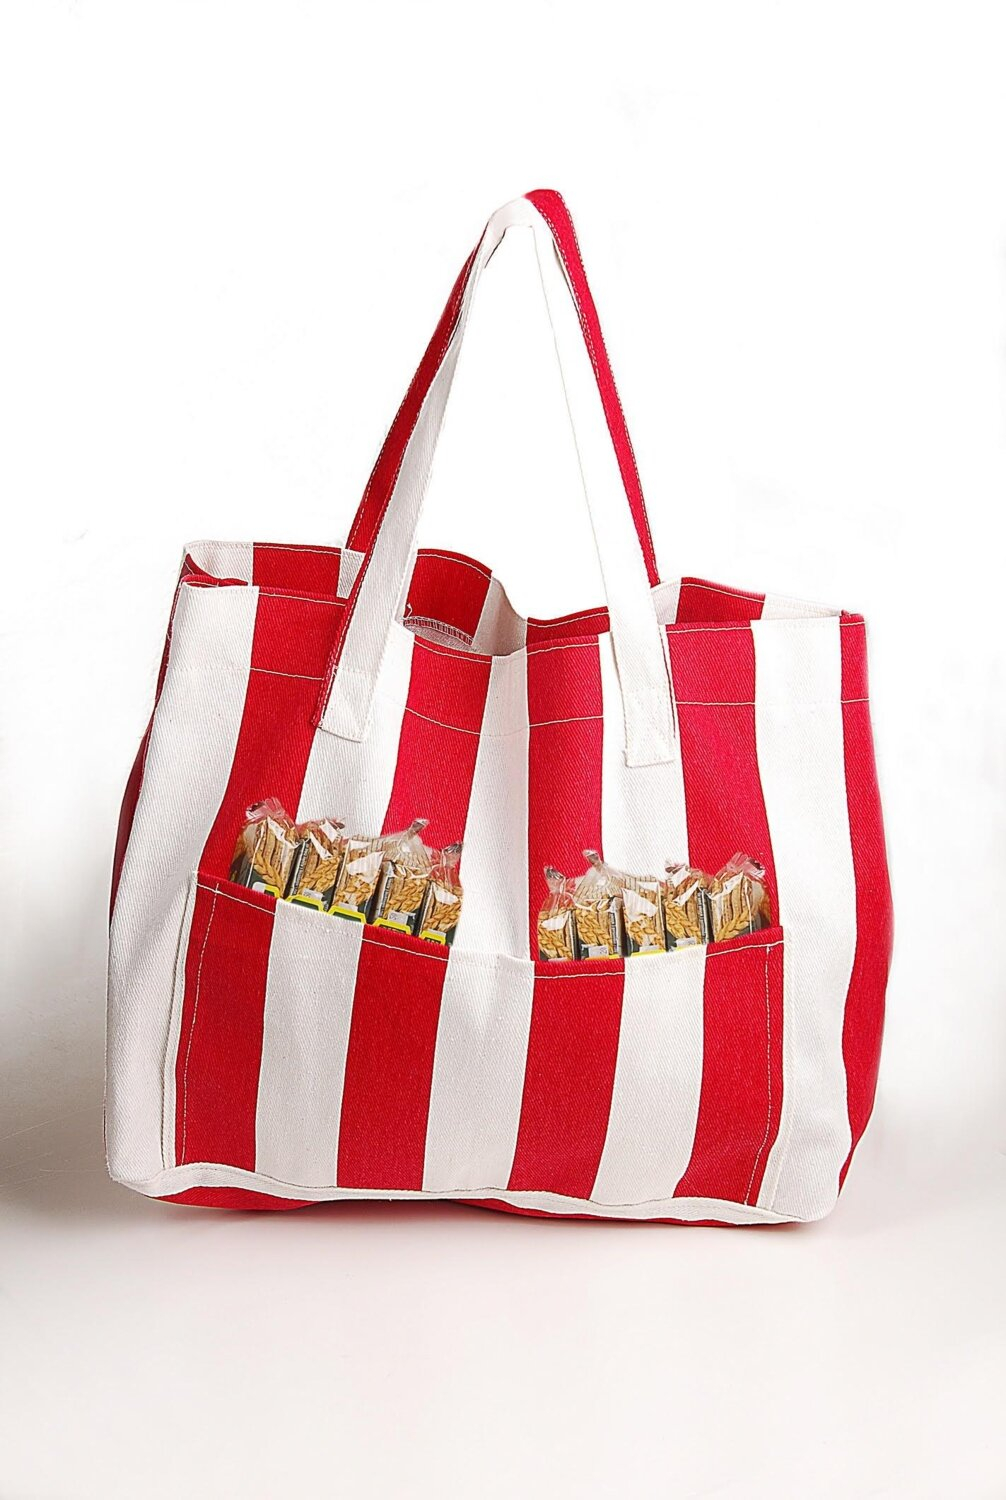 Женская холстовая сумка для пляжа Himarry с двумя карманами красного цвета